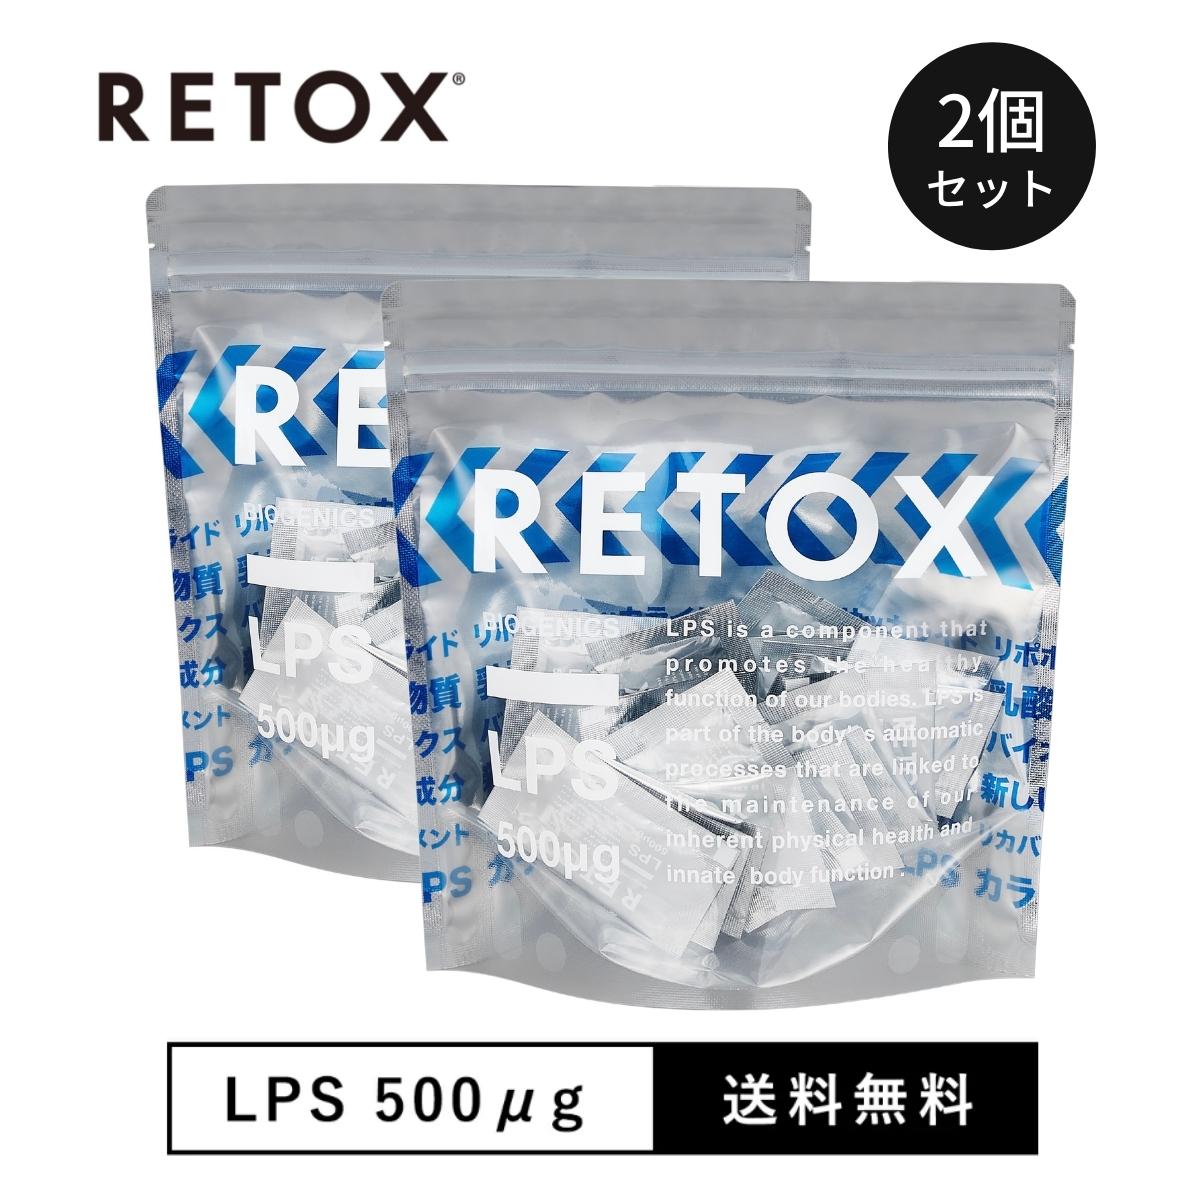 RETOX LPSリカバリーサプリメント【パウダータイプ】 2ヶ月分 60包